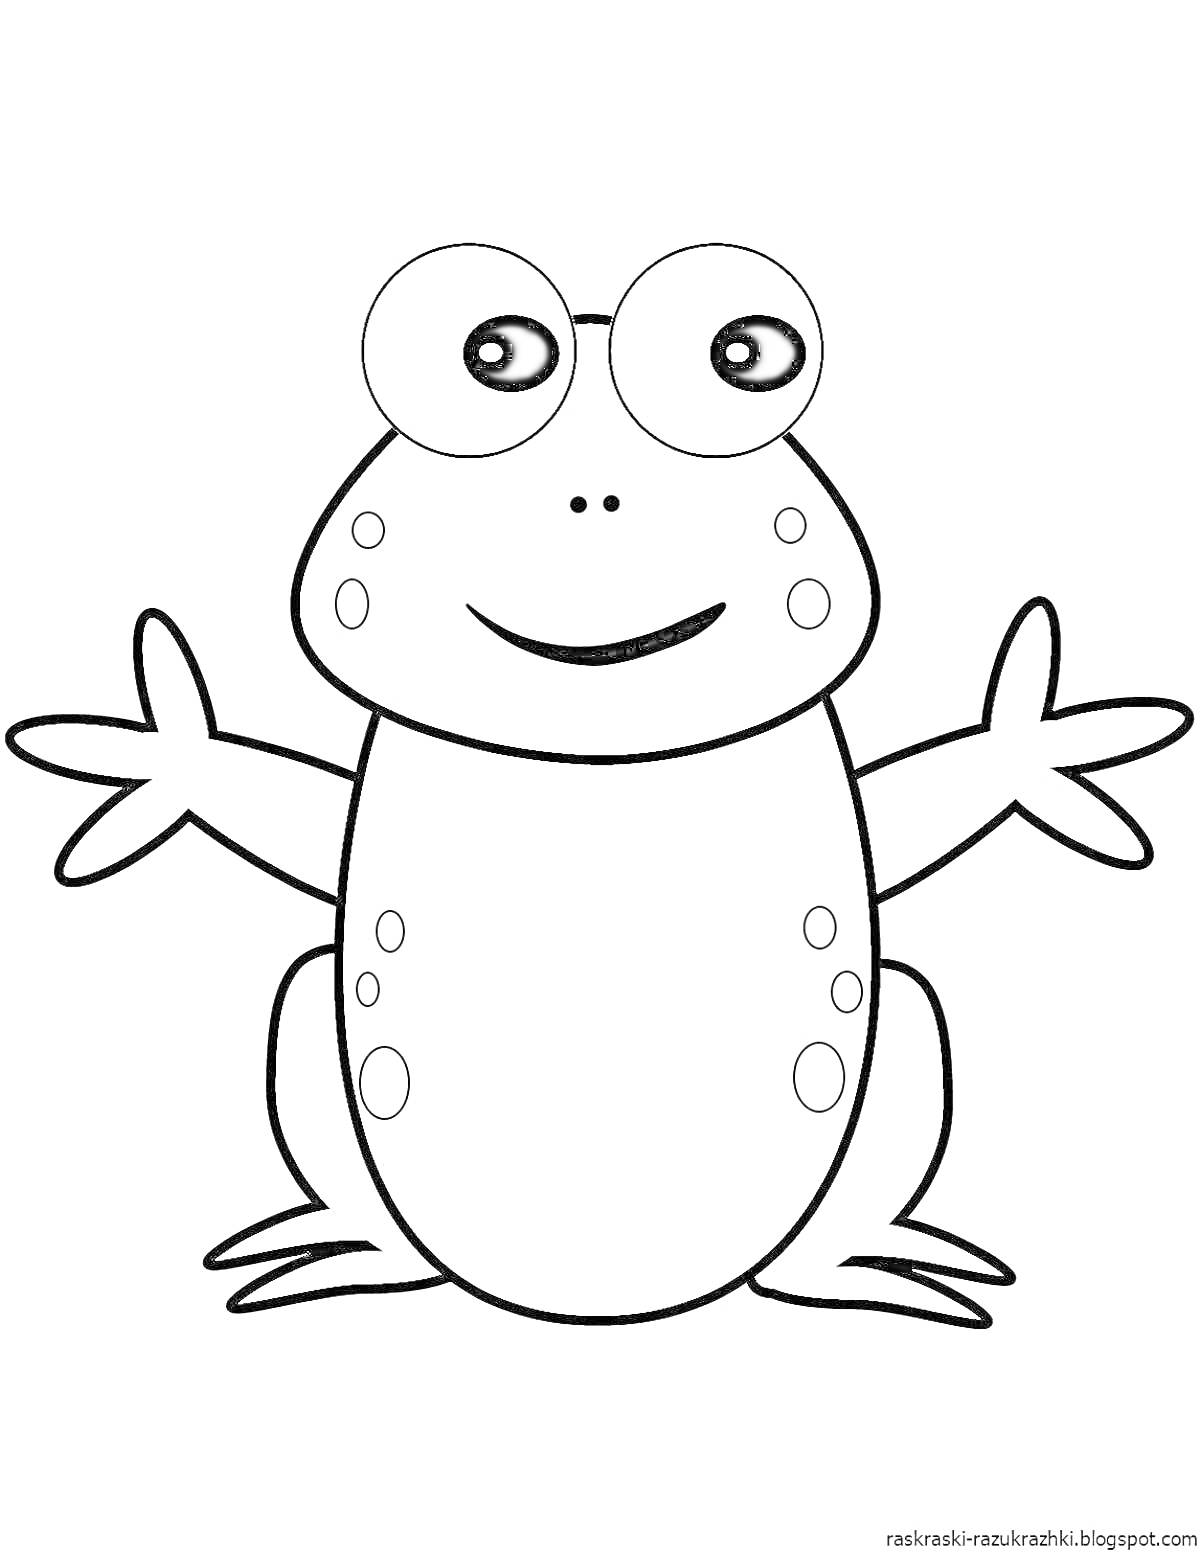 Раскраска Лягушка с большими глазами, с пятнами на теле и ладошками растопыренными в стороны на раскраске